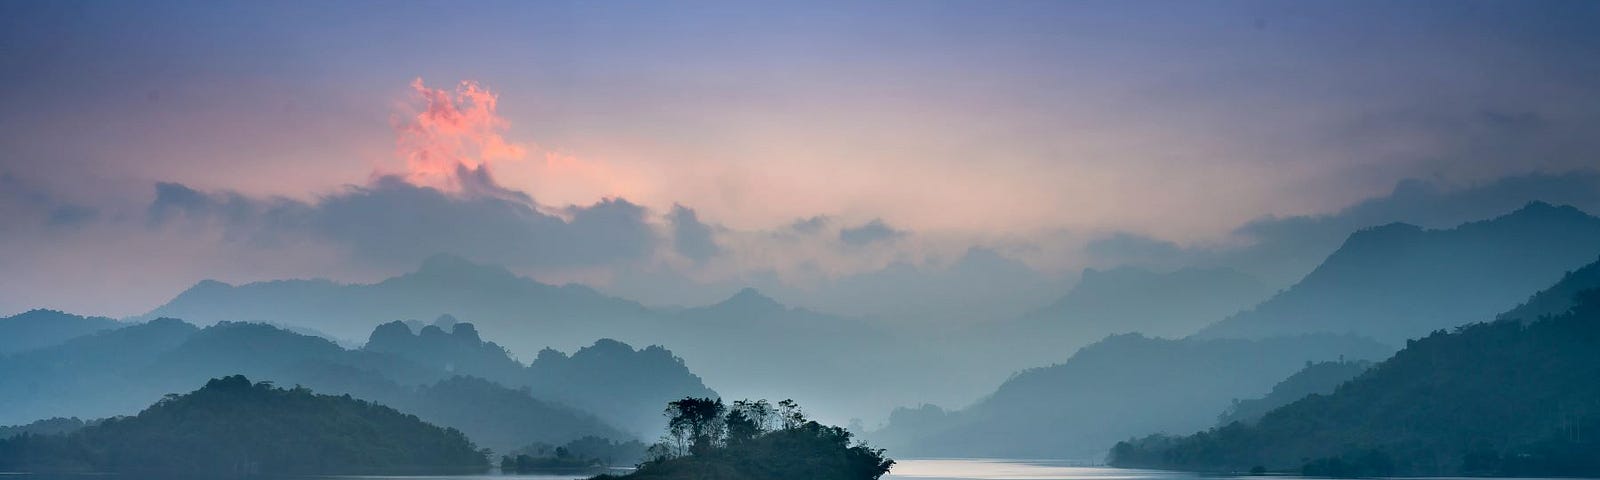 A misty lake among mountains.